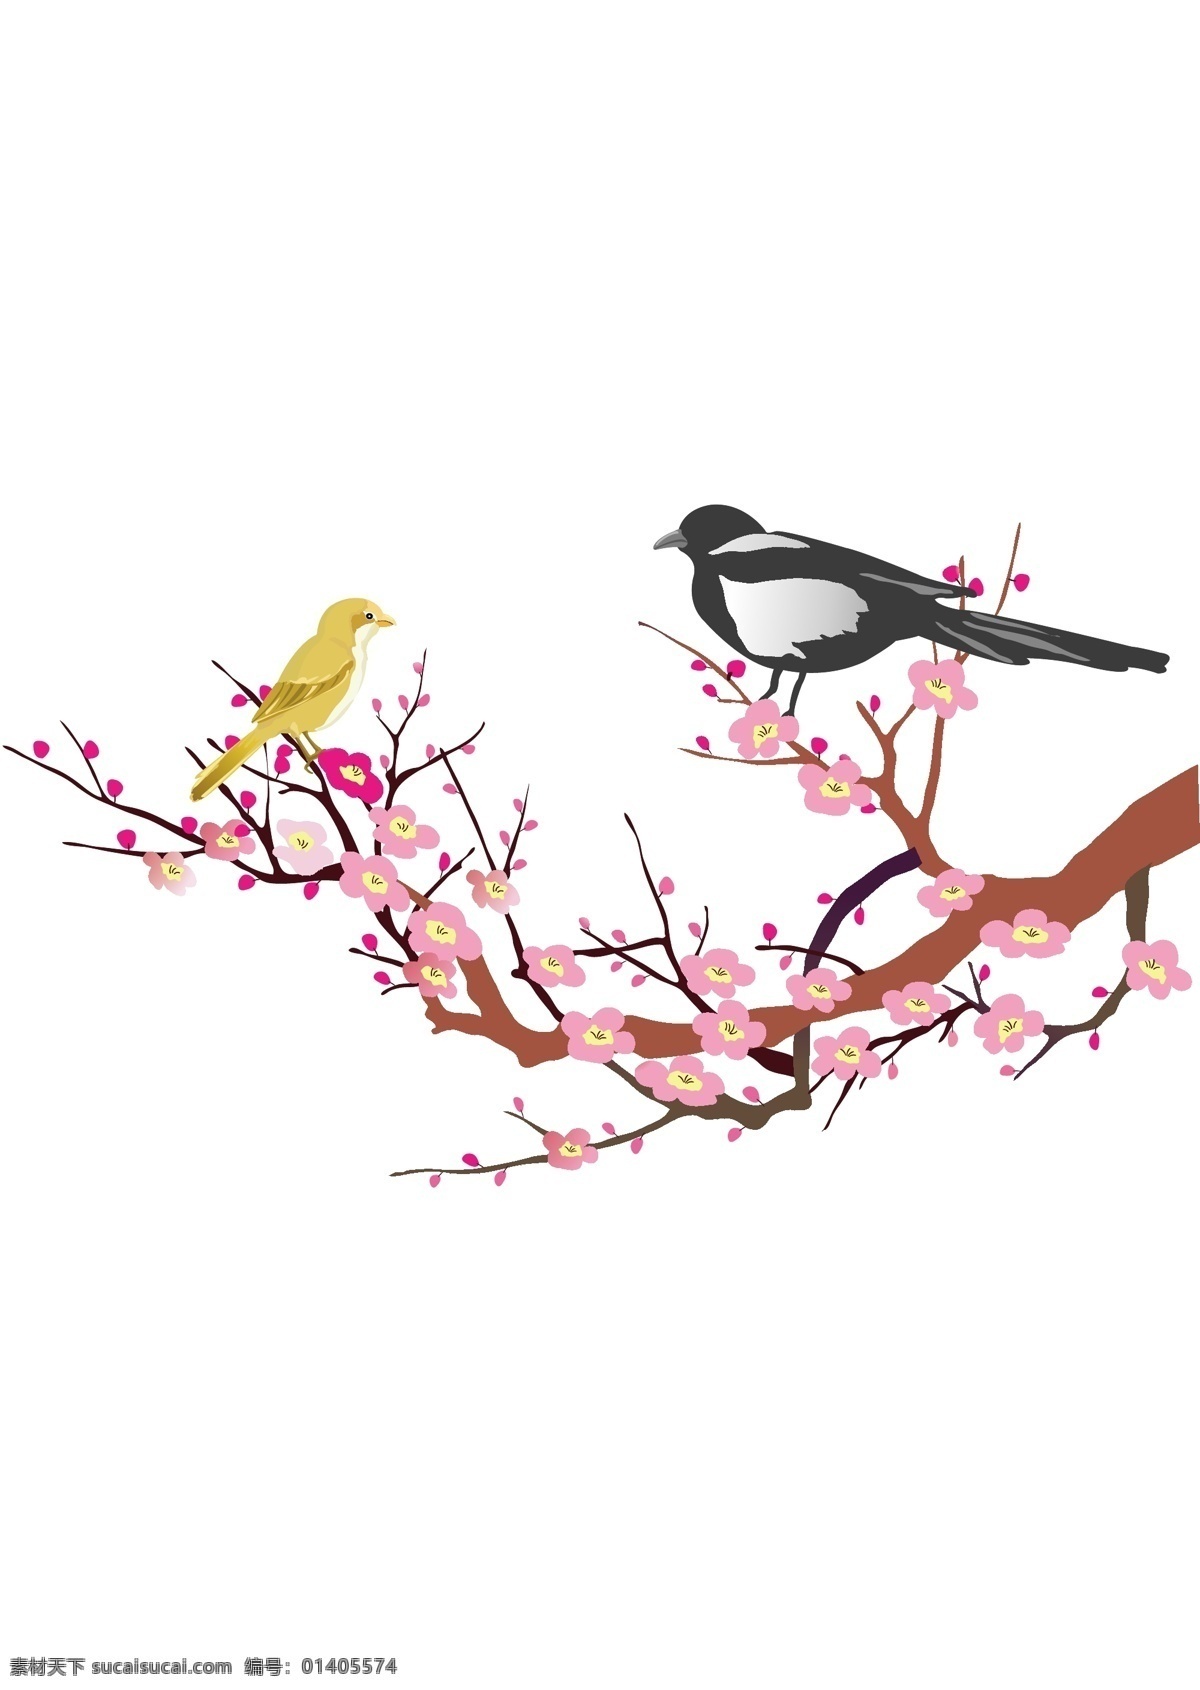 鸟语花香 花卉 花朵 叶树 印花 插画 鸟儿 矢量素材 其他矢量 矢量